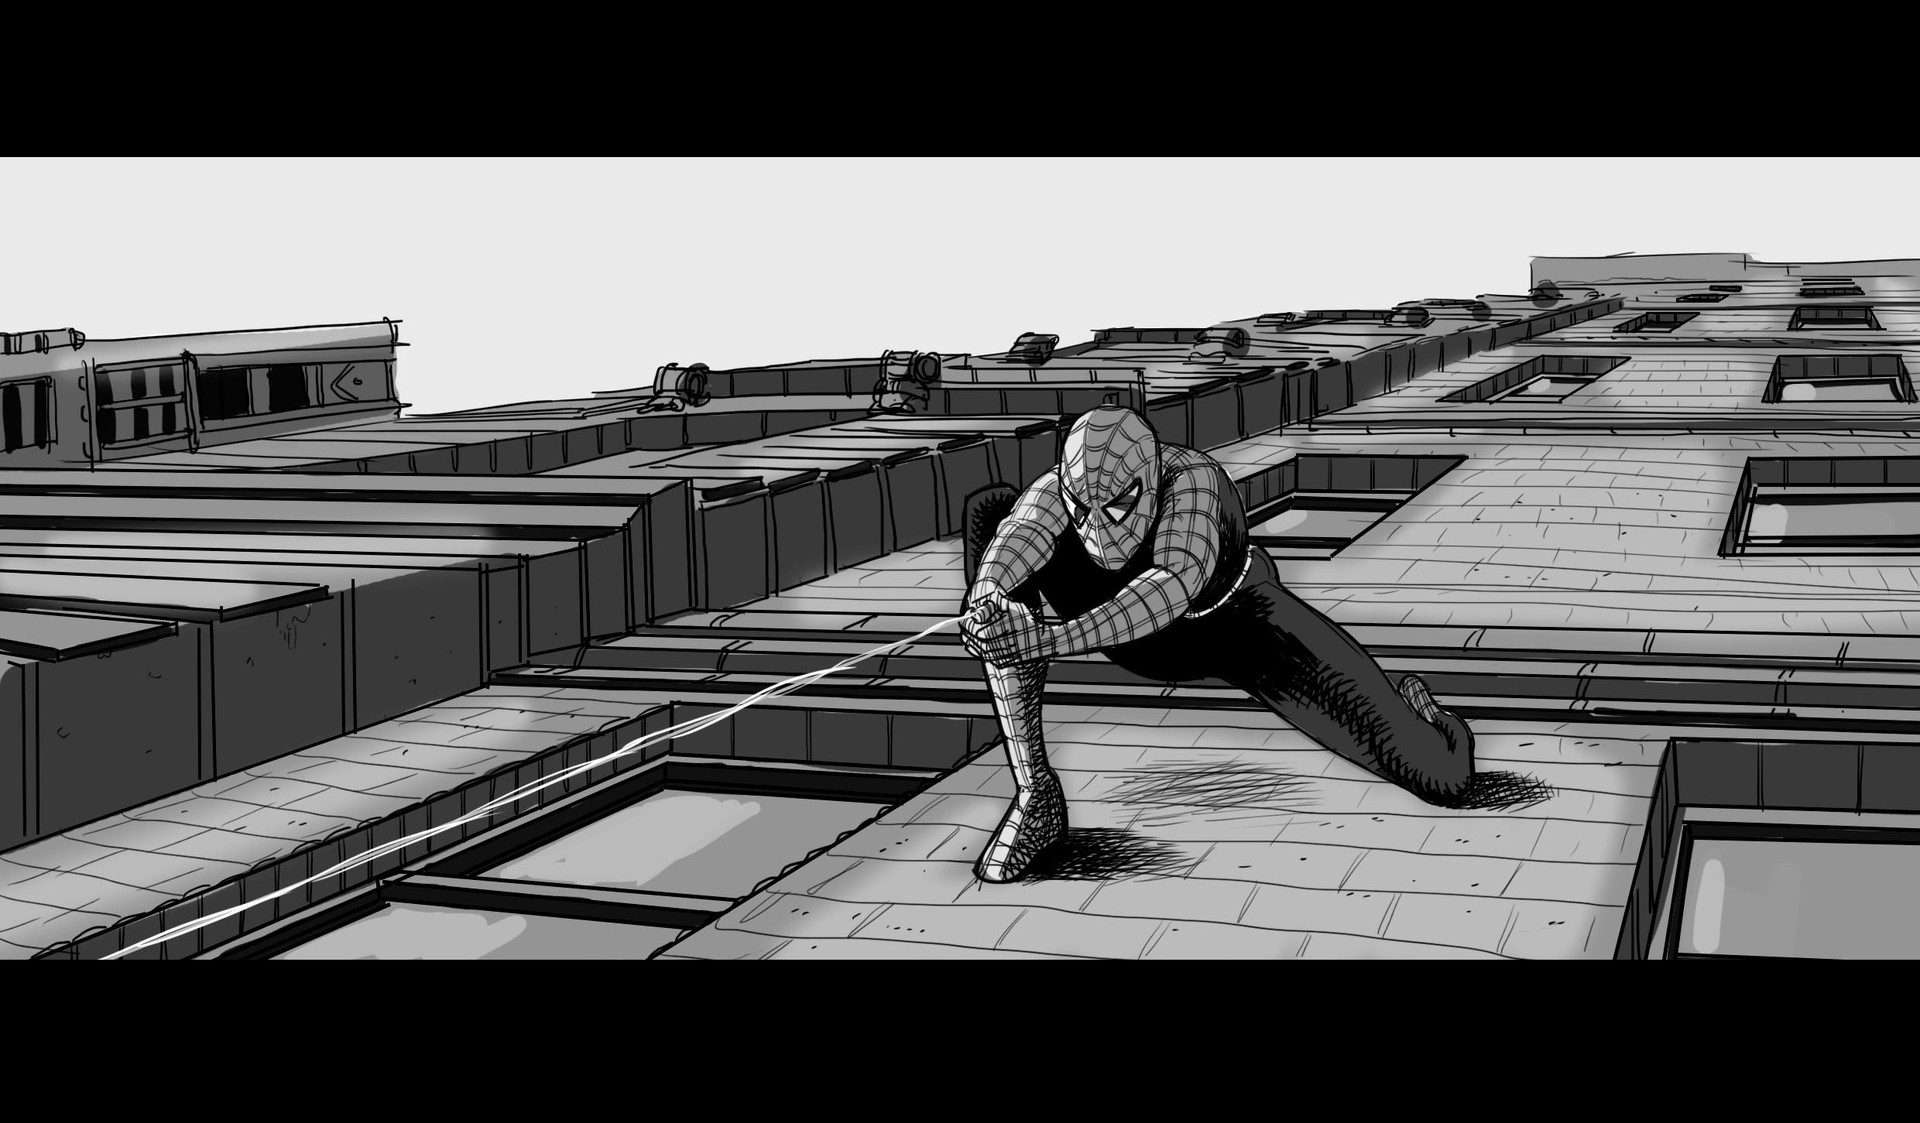 Laurent Préa - StoryBoards based on Spiderman film